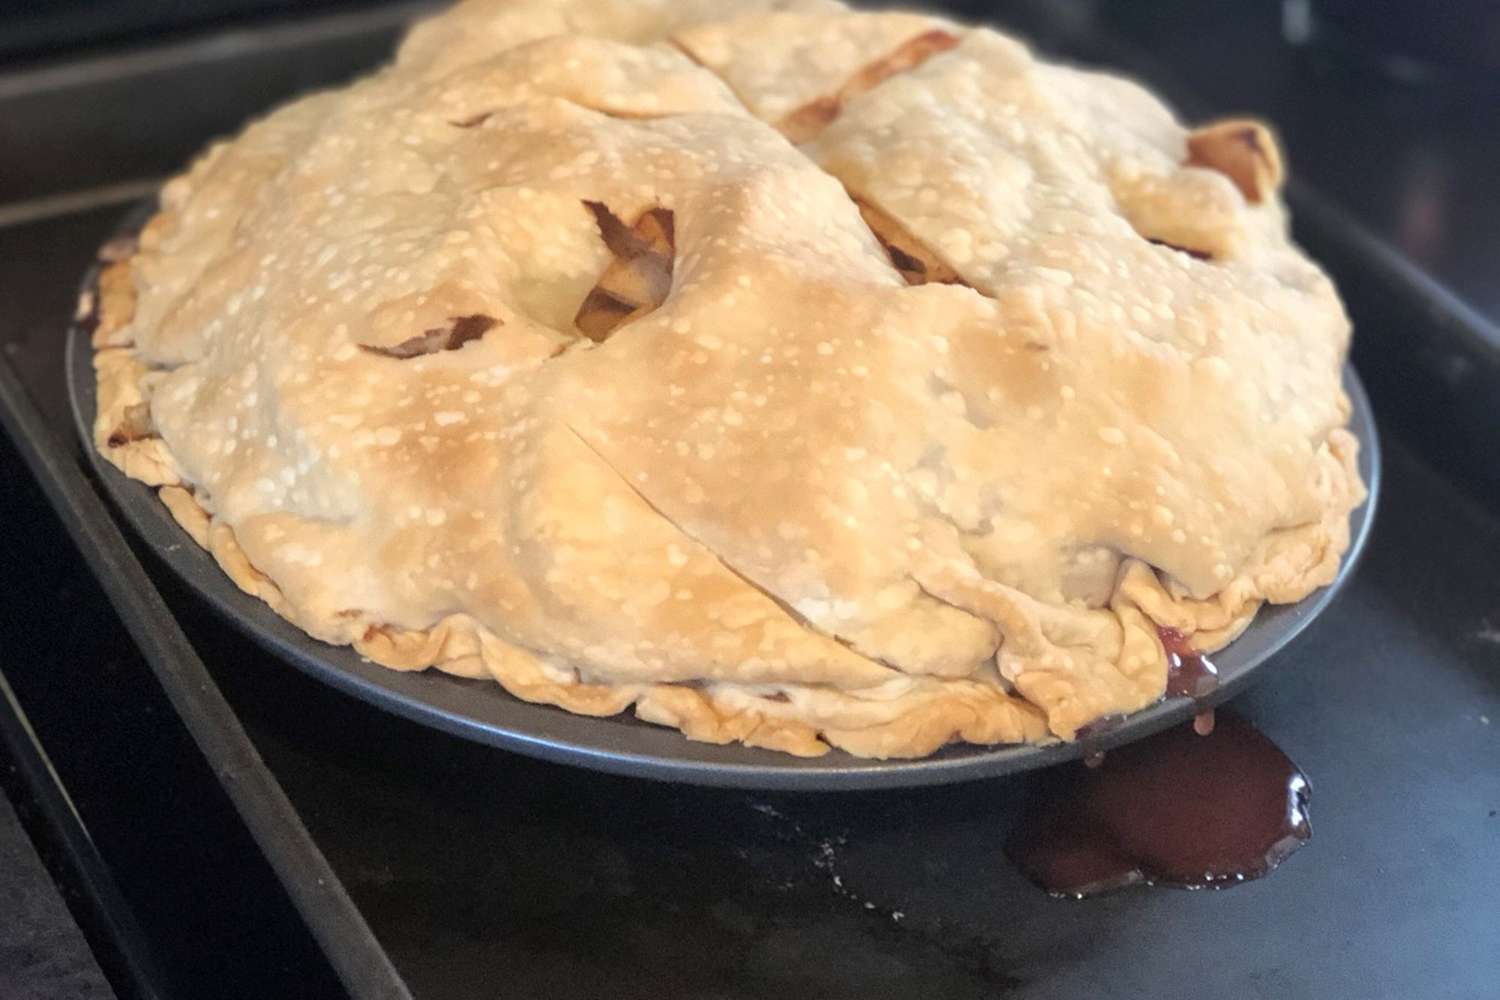 Jen's Cranberry Apple Pie